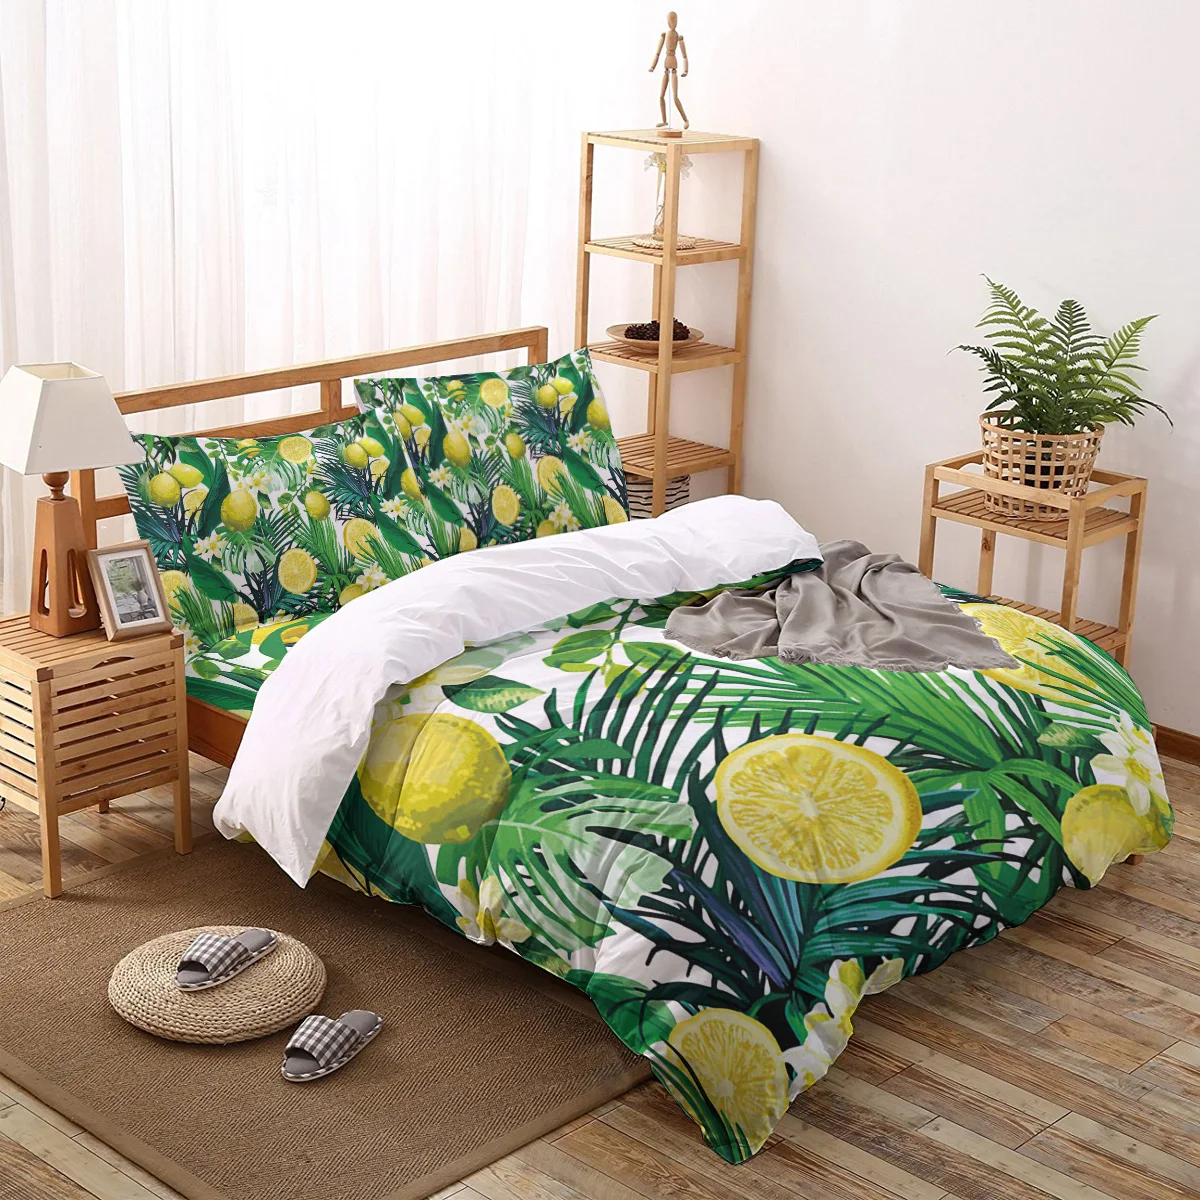 

2/3/4pcs Bedding Set Lemon Flowers Tropical Leaves Duvet Cover Creative Comforter Bed Cover Set Housse De Couette Bedclothes